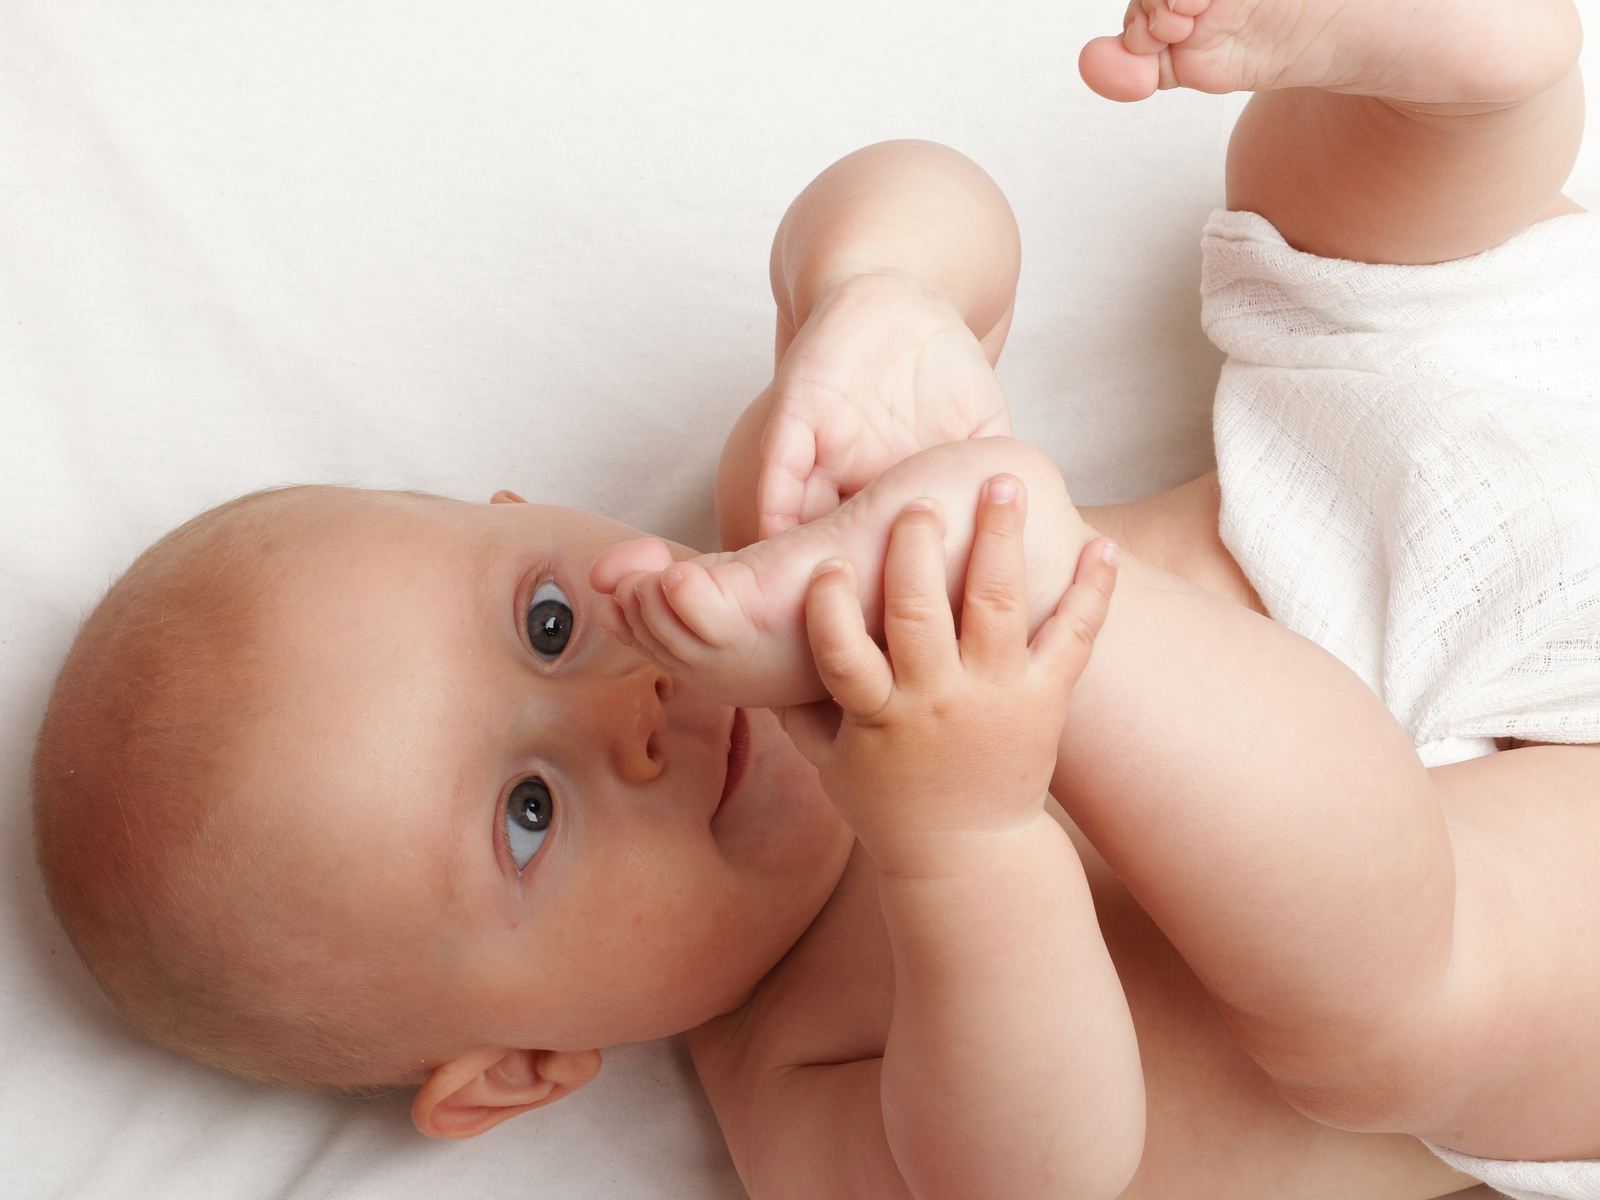 معاني حركات الطفل الرضيع